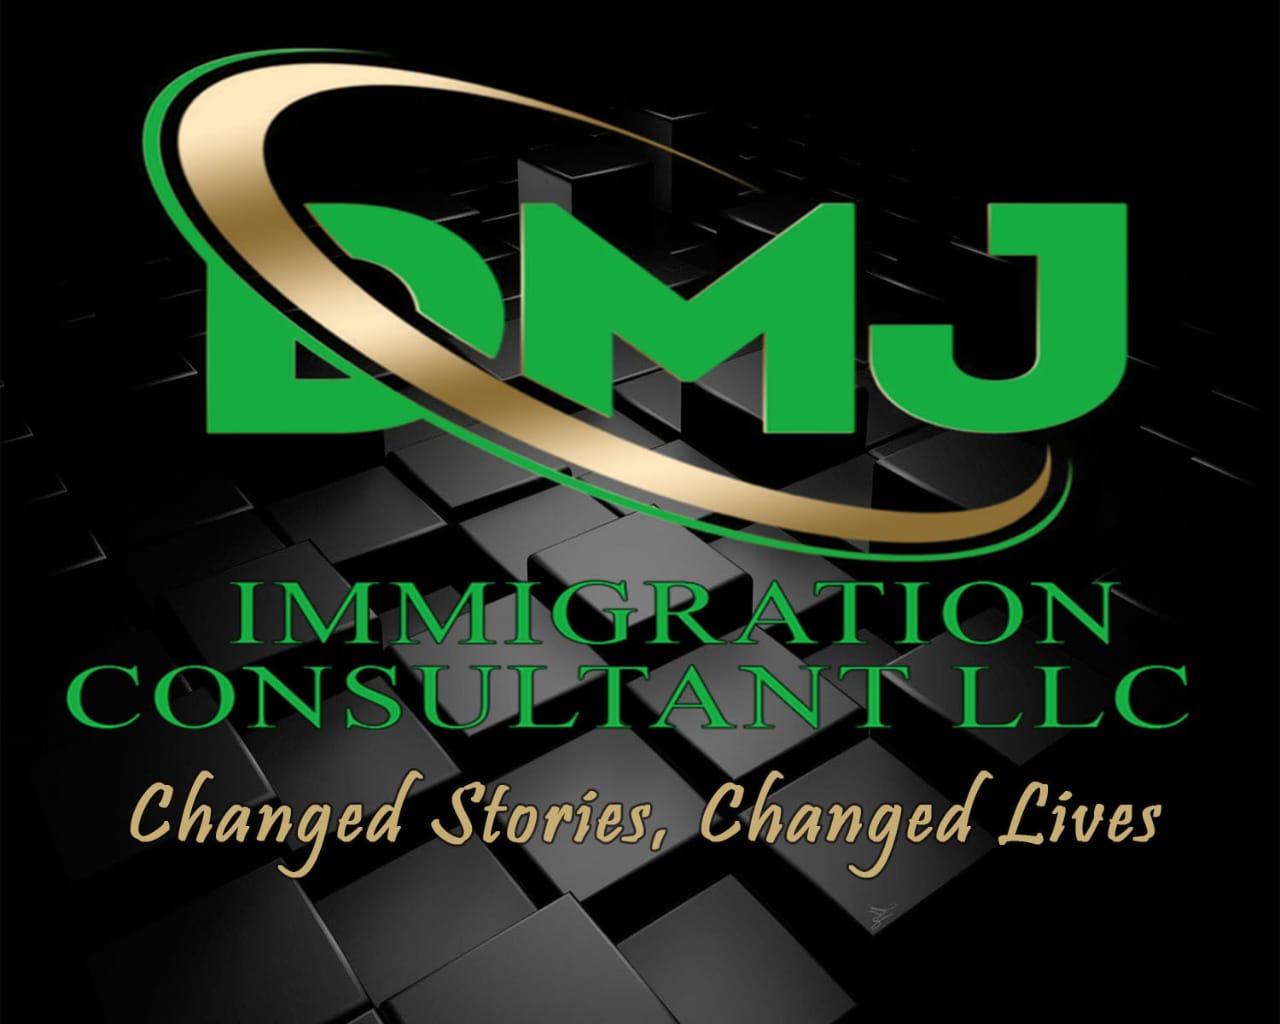 DMJ Immigration Consultant LLC